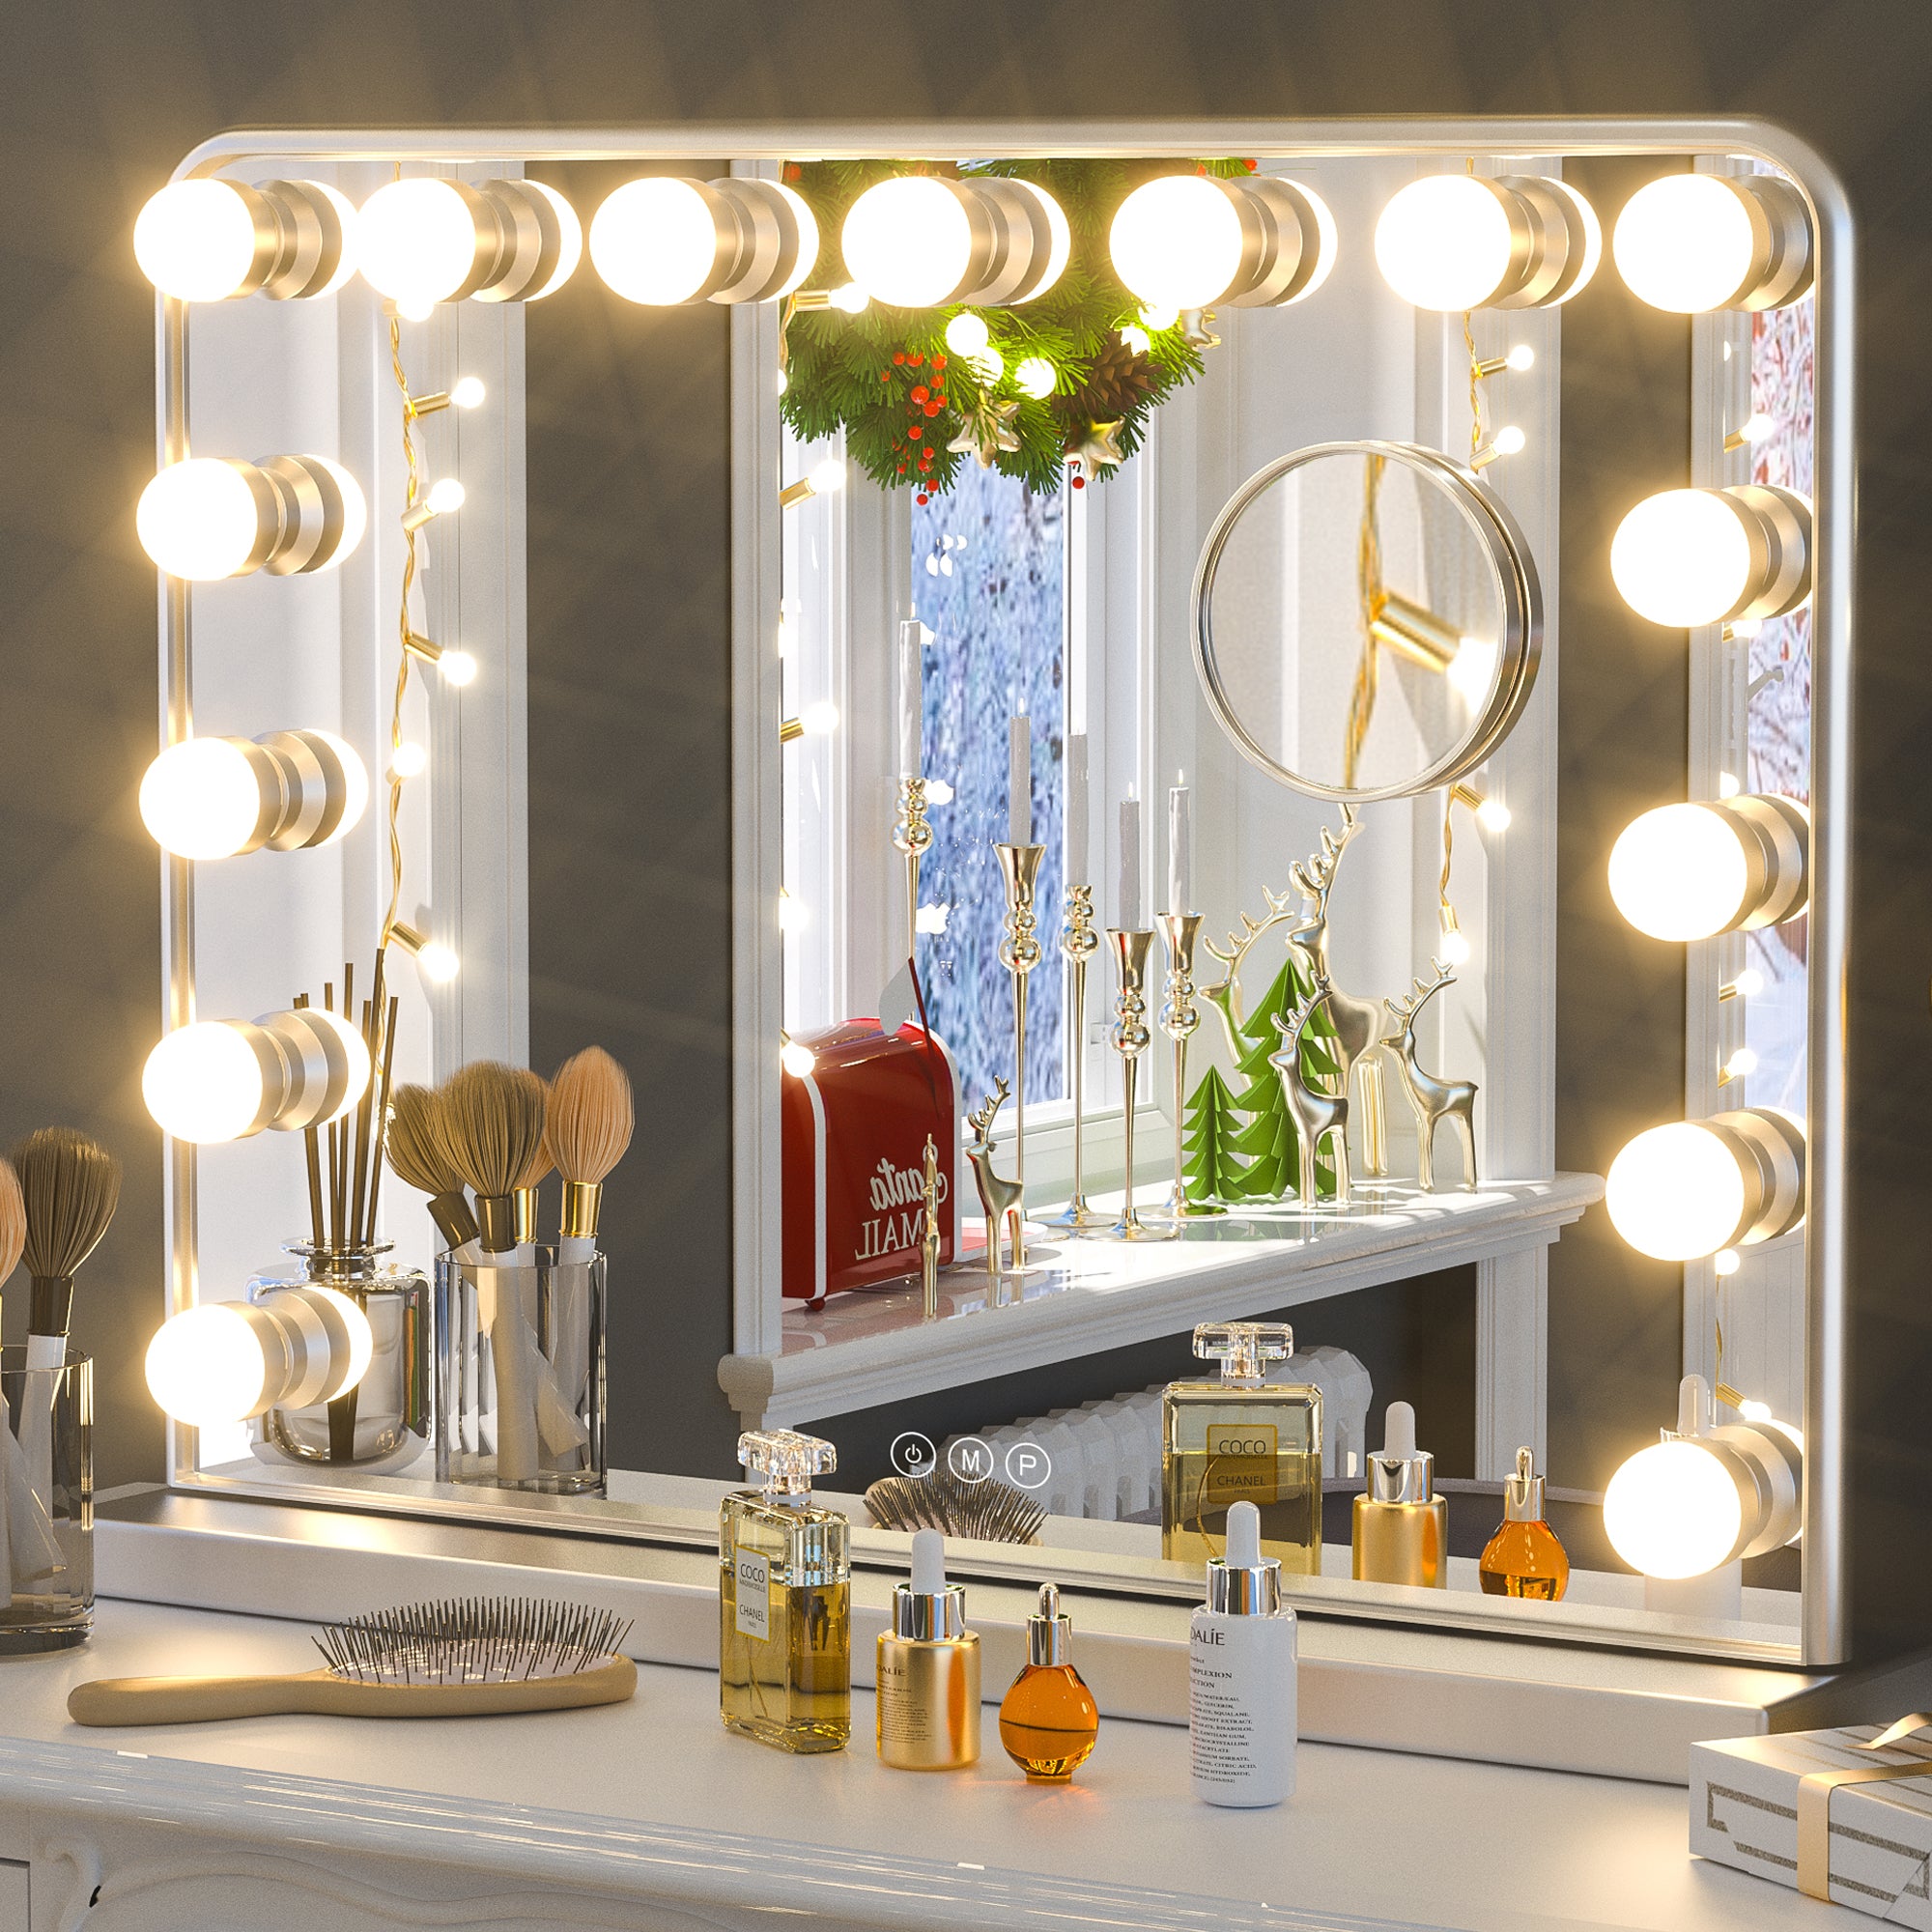 Keonjinn Hollywood Makeup Mirror Black Vanity Mirror Algeria